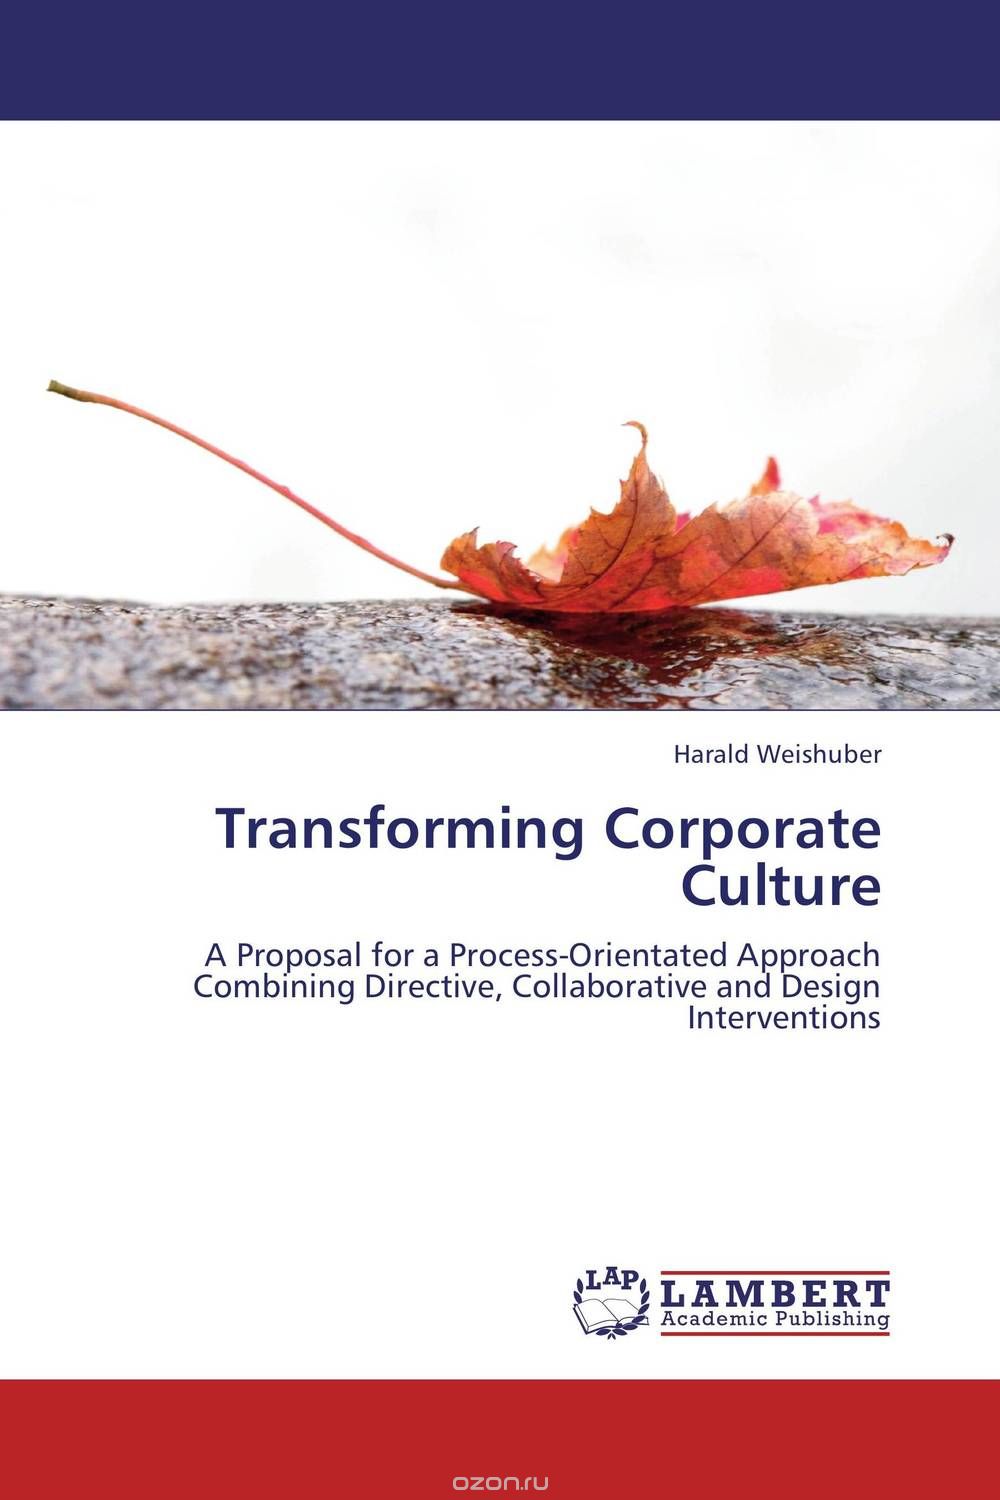 Скачать книгу "Transforming Corporate Culture"